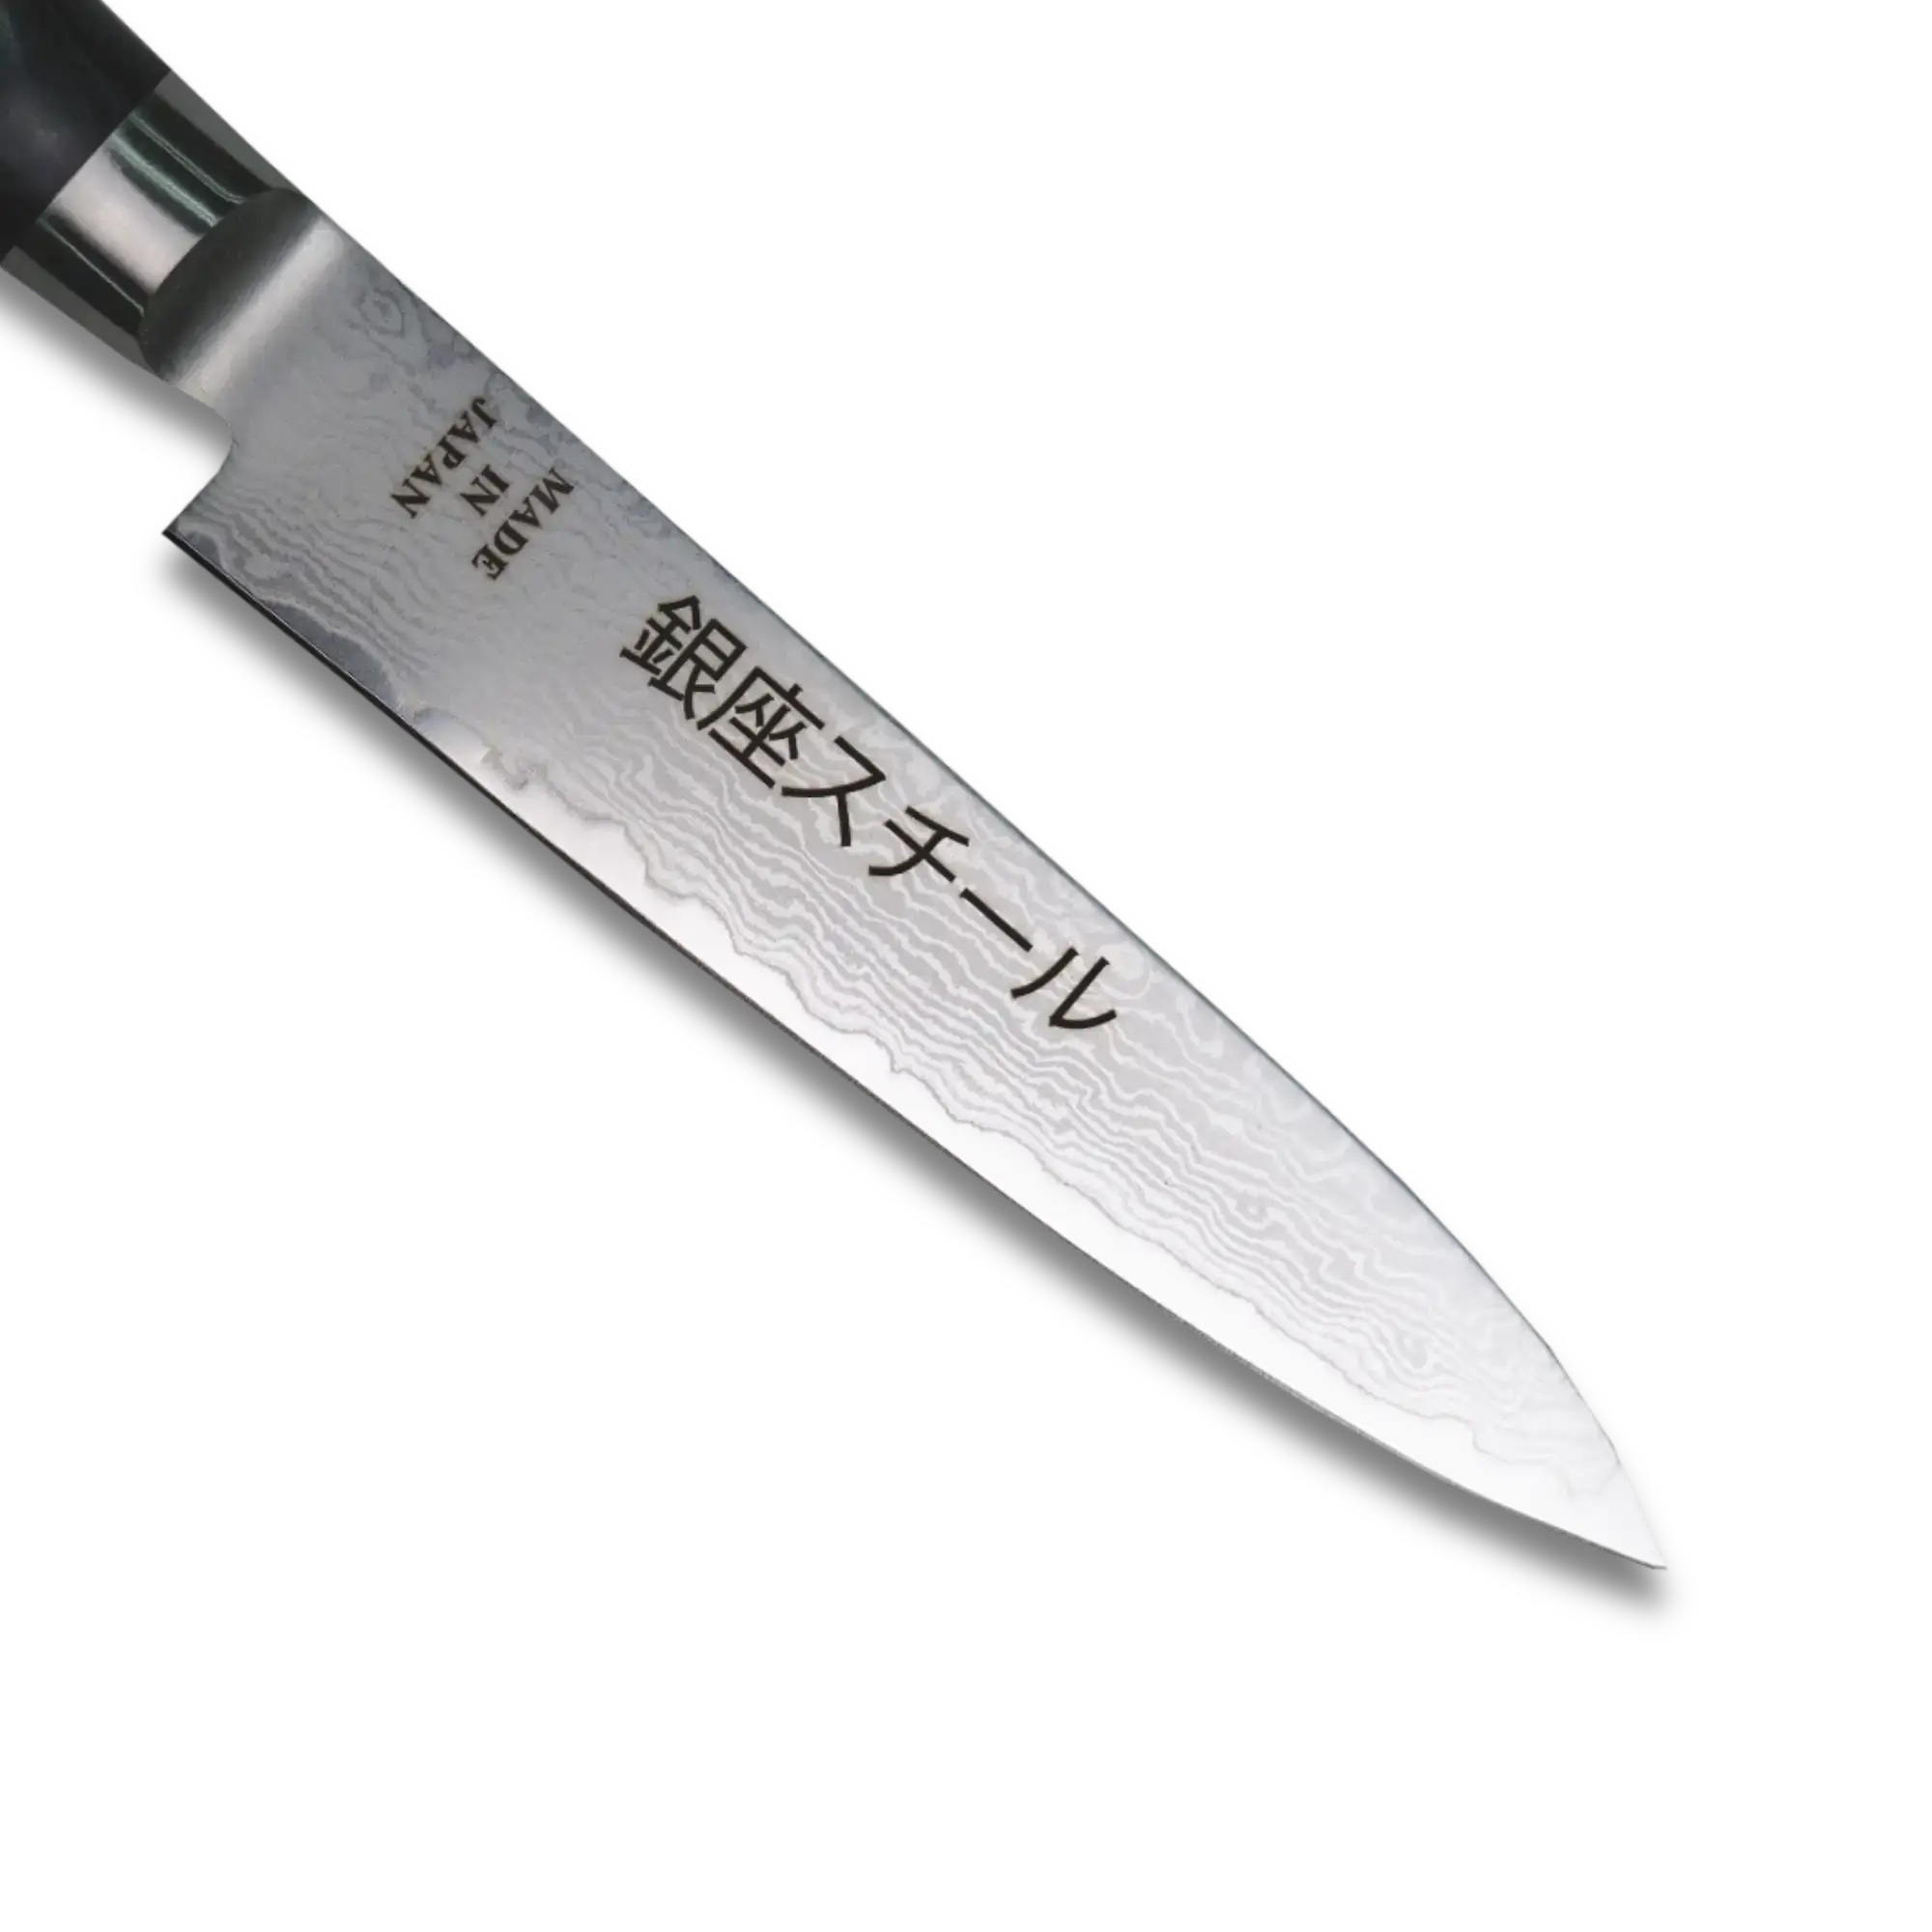 HAYAMI 130 - VG10 - 69 Layered Damascus Steel Petty Knife 130mm